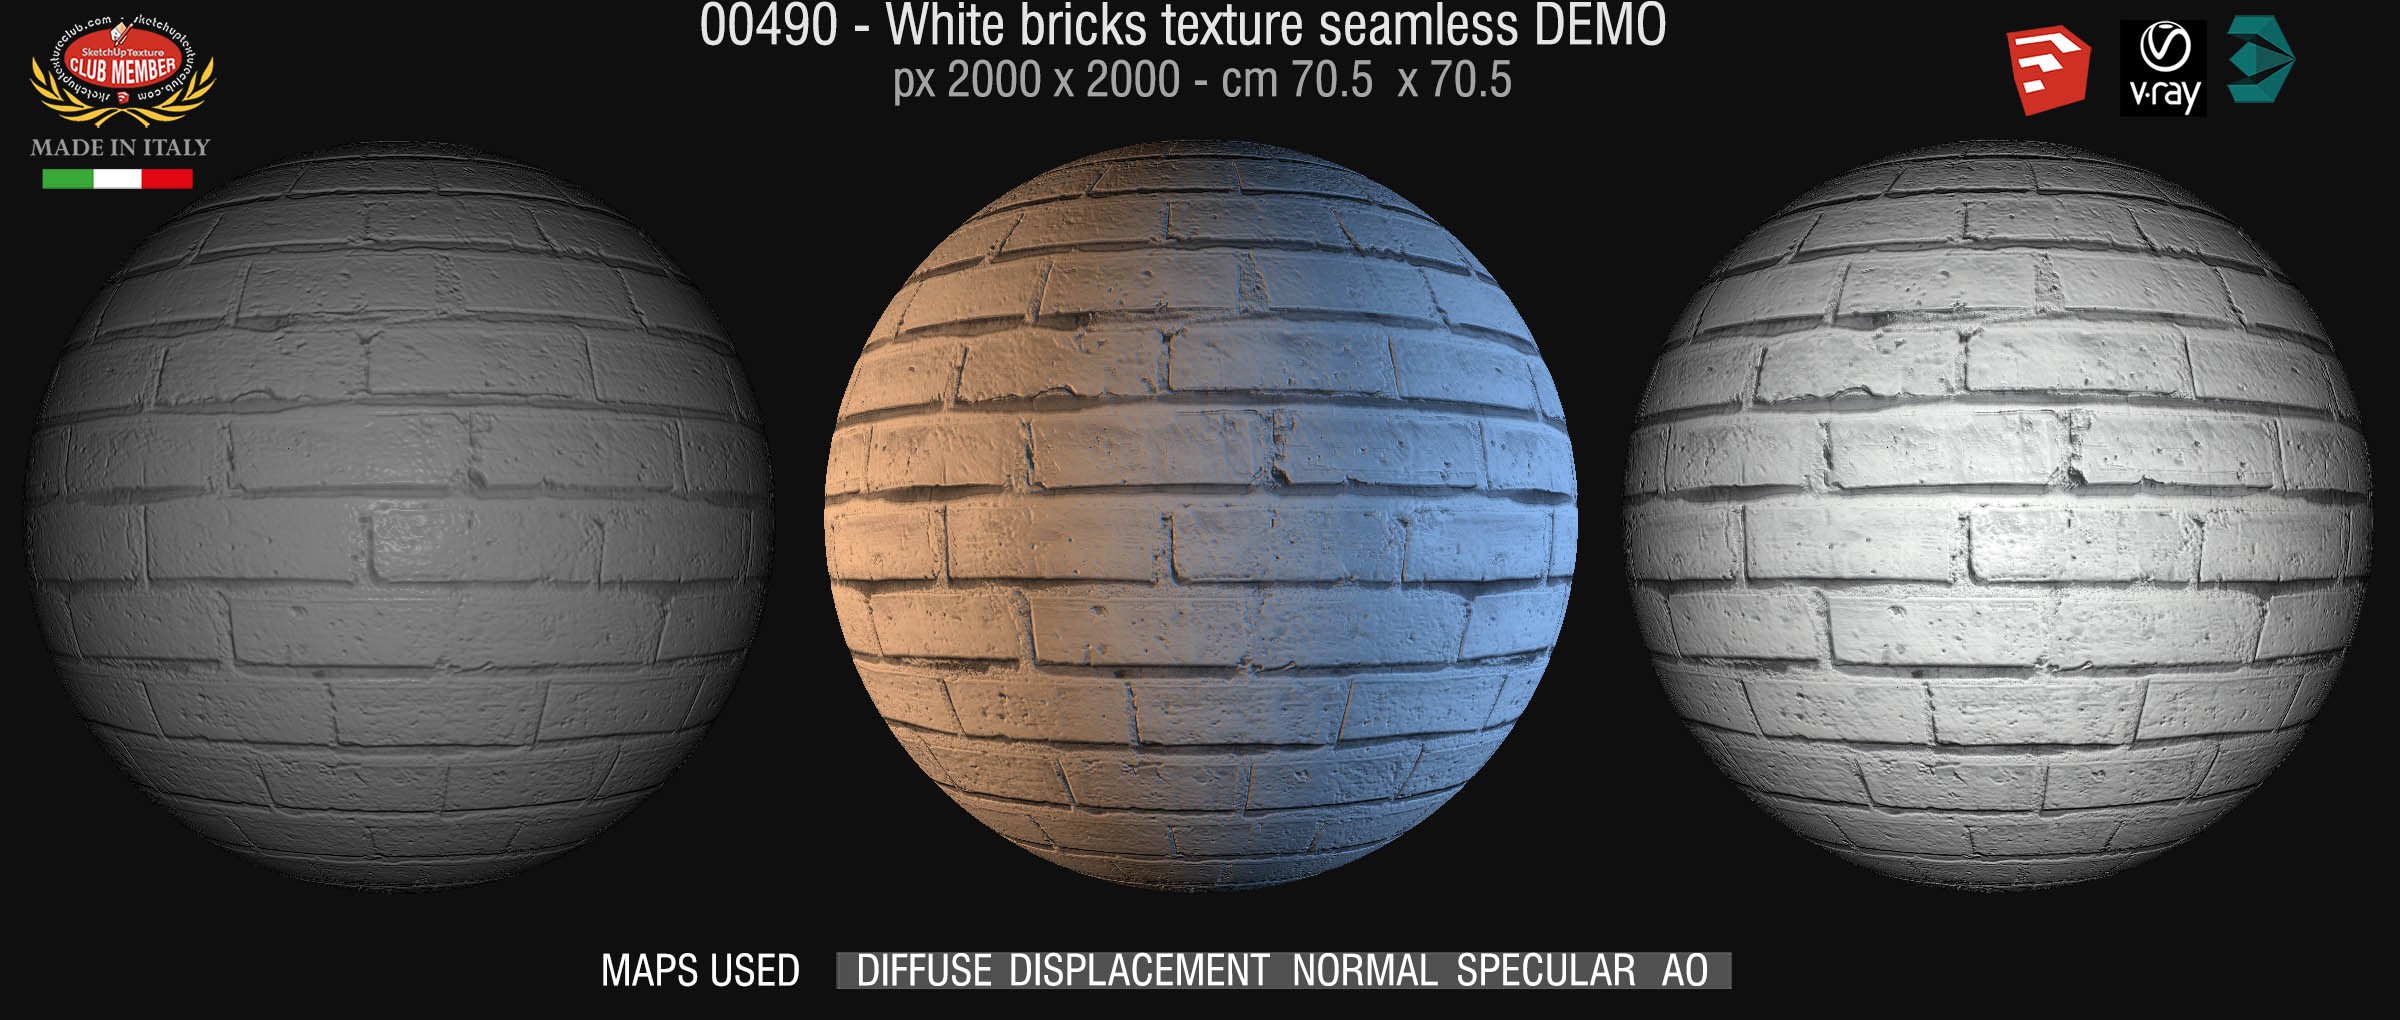 00490 White bricks texture seamless + maps DEMO